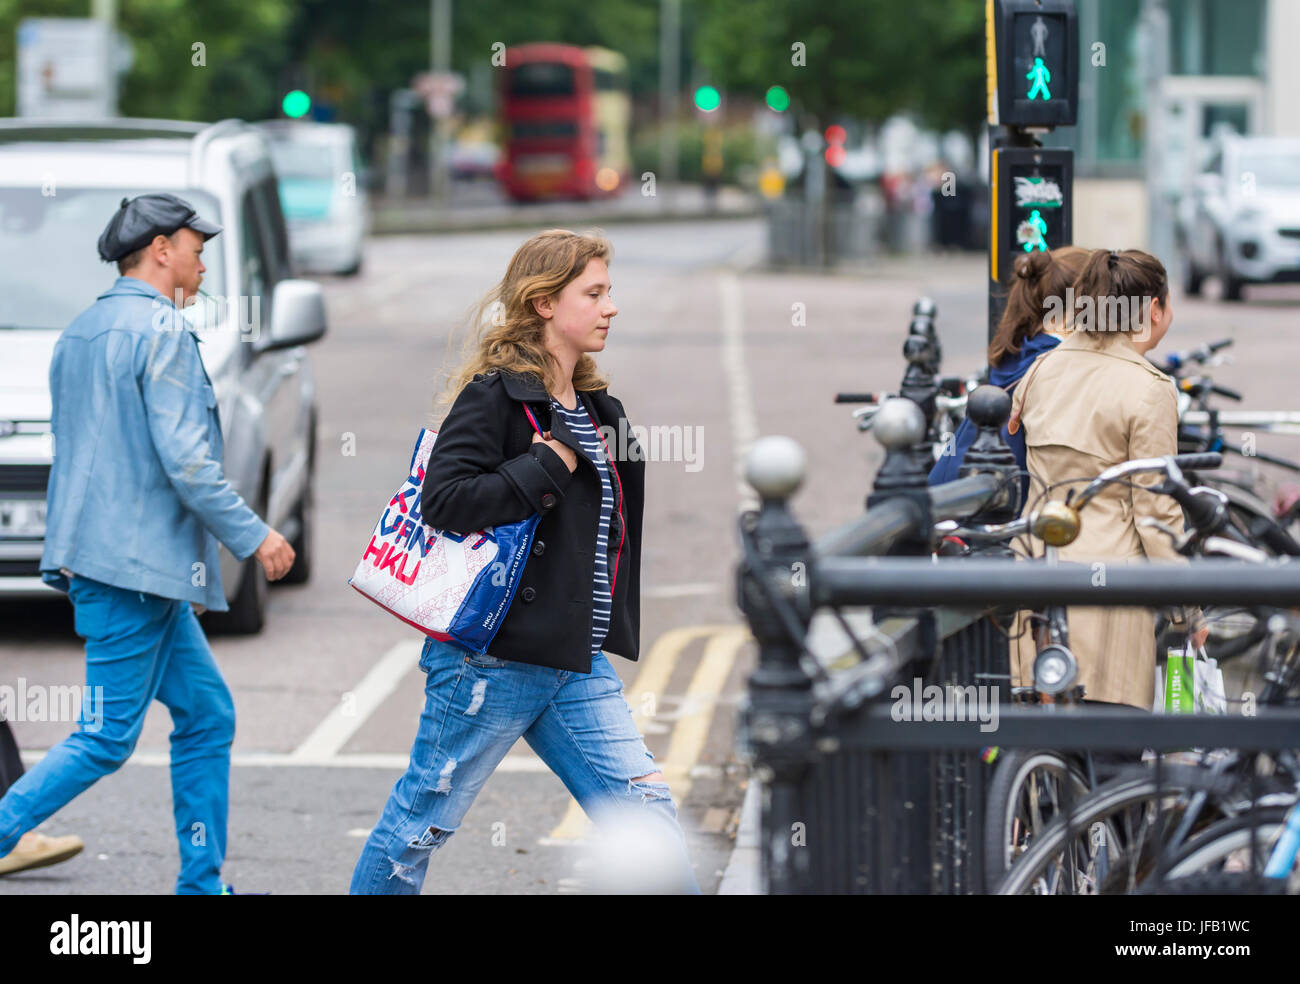 Frau überqueren einer Straße in einer Stadt, leuchtet der grüne Mann an einem Fußgängerüberweg im Vereinigten Königreich. Stockfoto